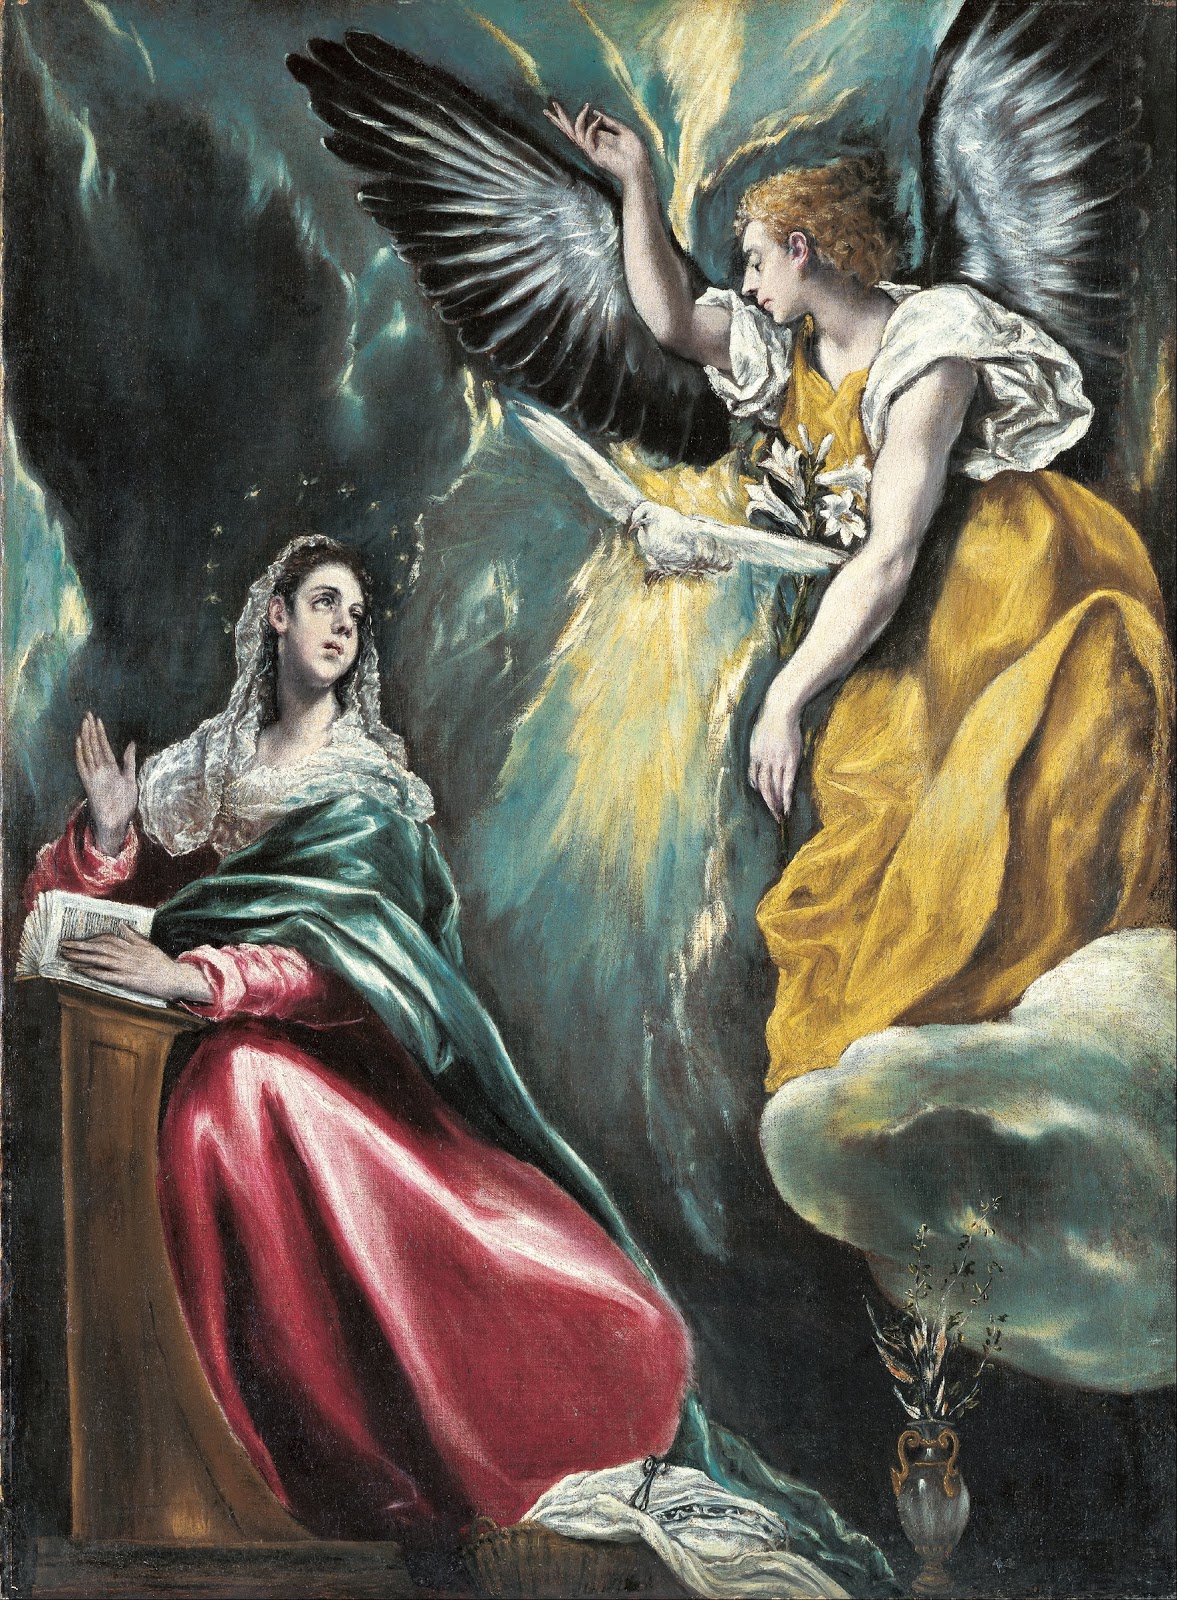 El+Greco-1541-1614 (253).jpg